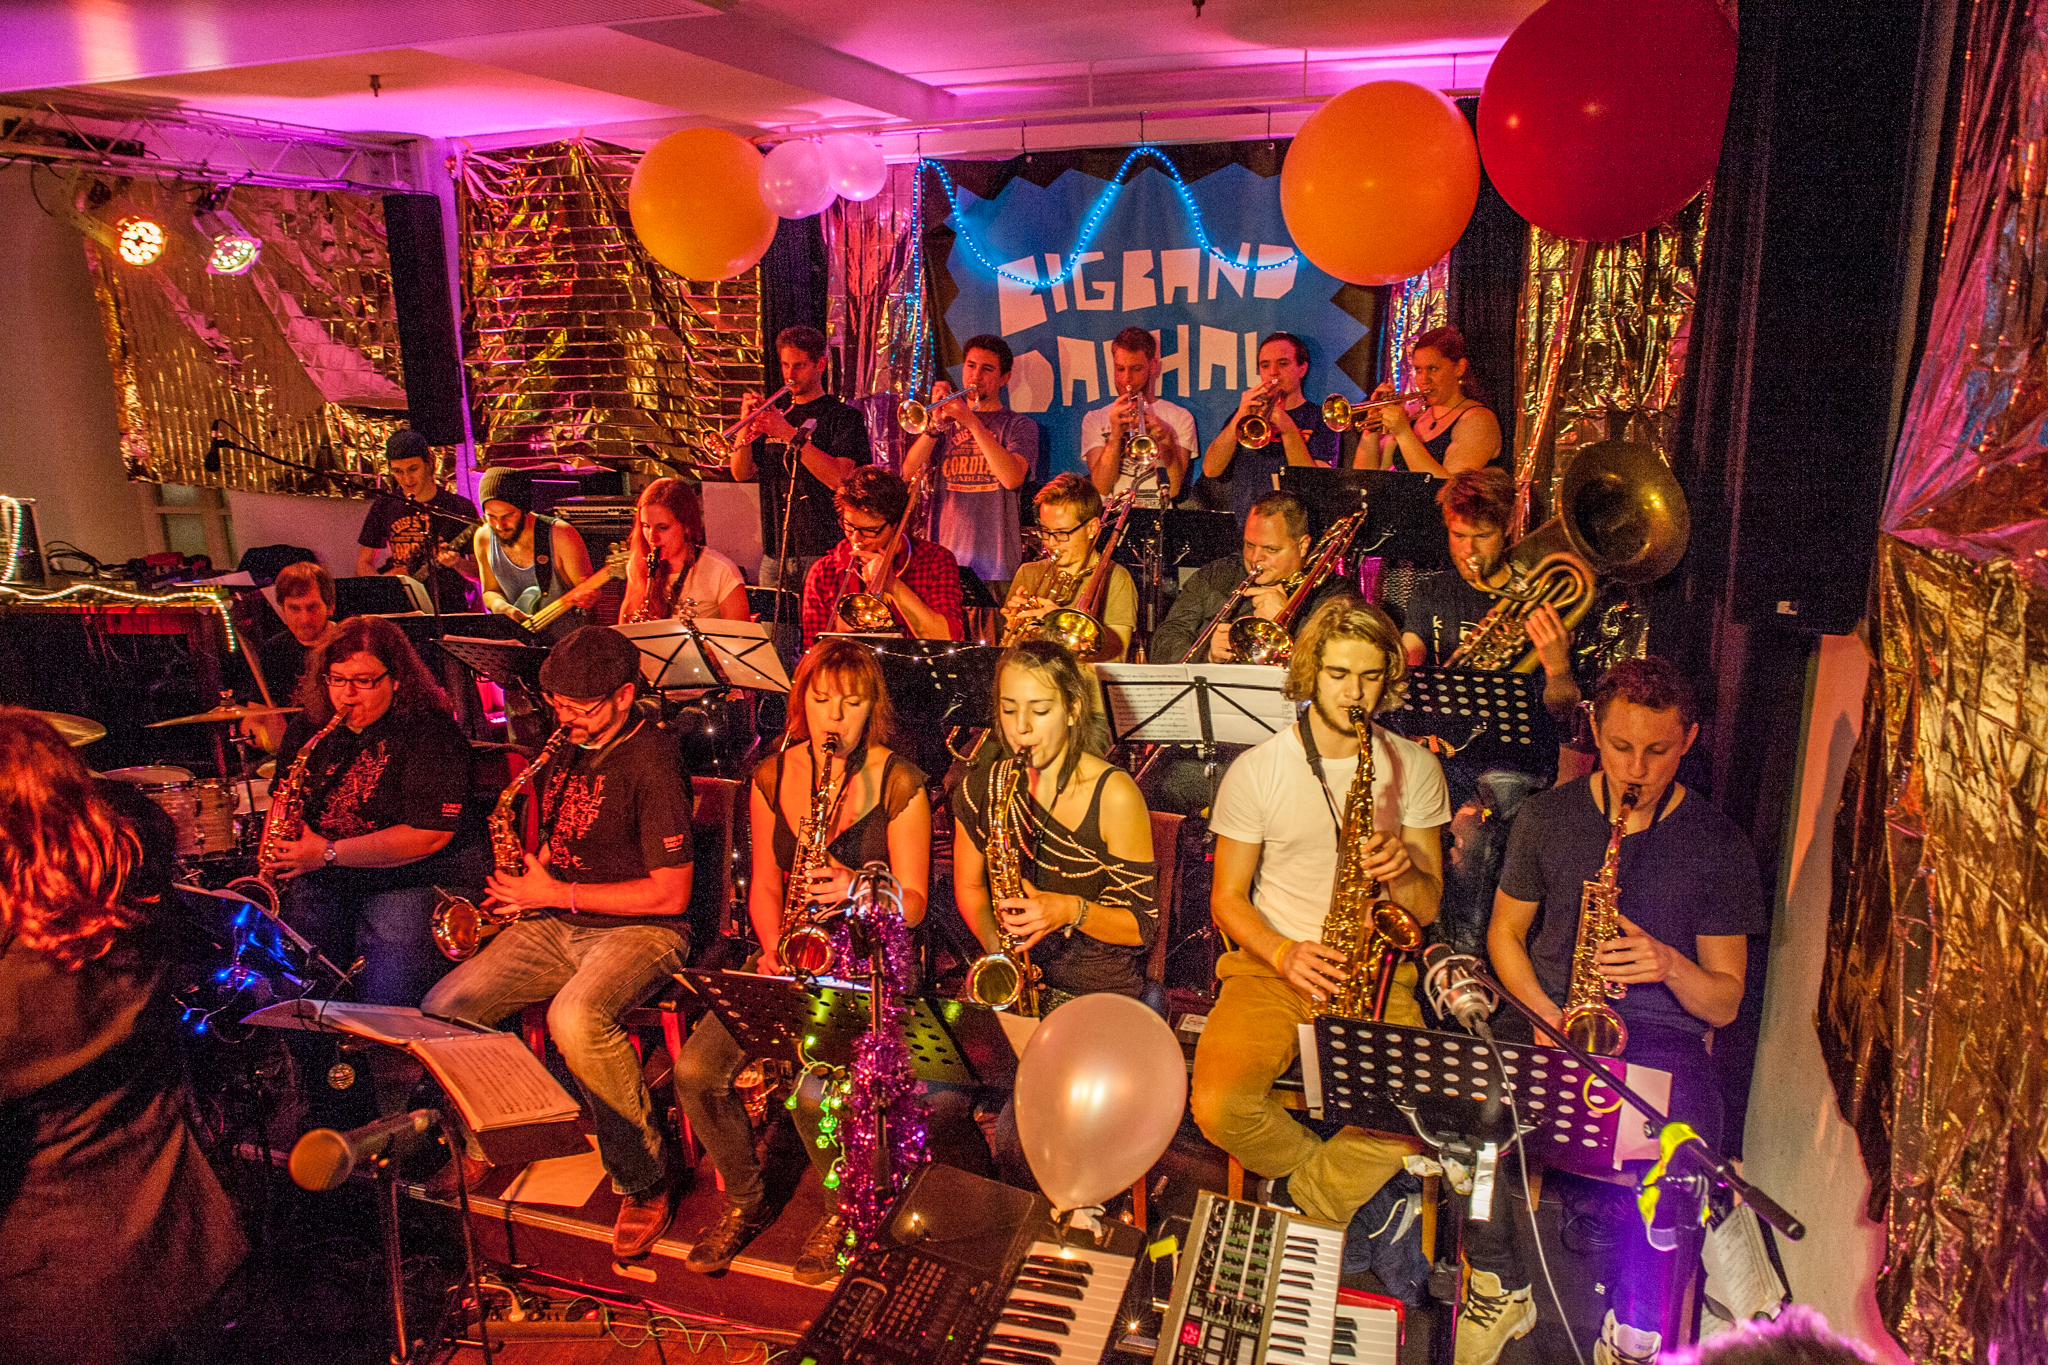 Bigband Dachau – Bigband meets Disco, 02.01.2015